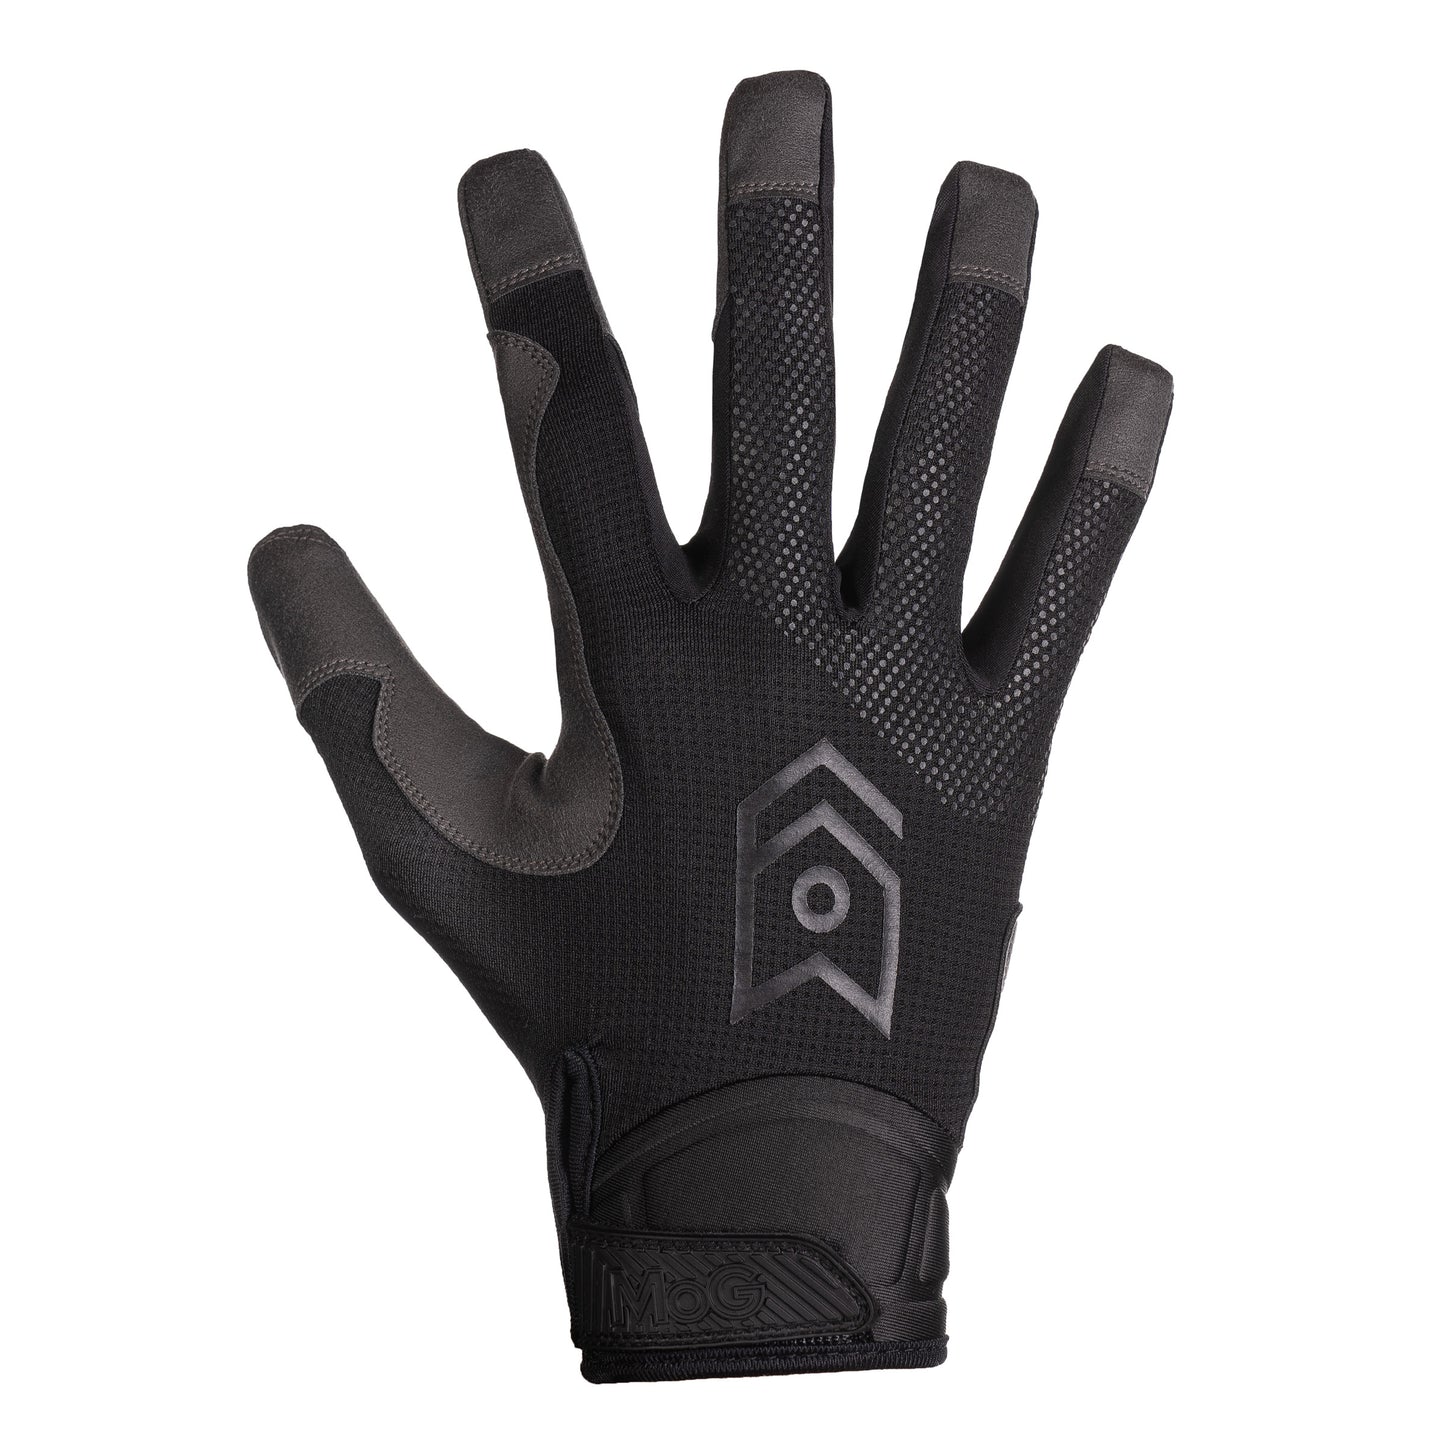 MoG Target High Abrasion Tactical Gloves